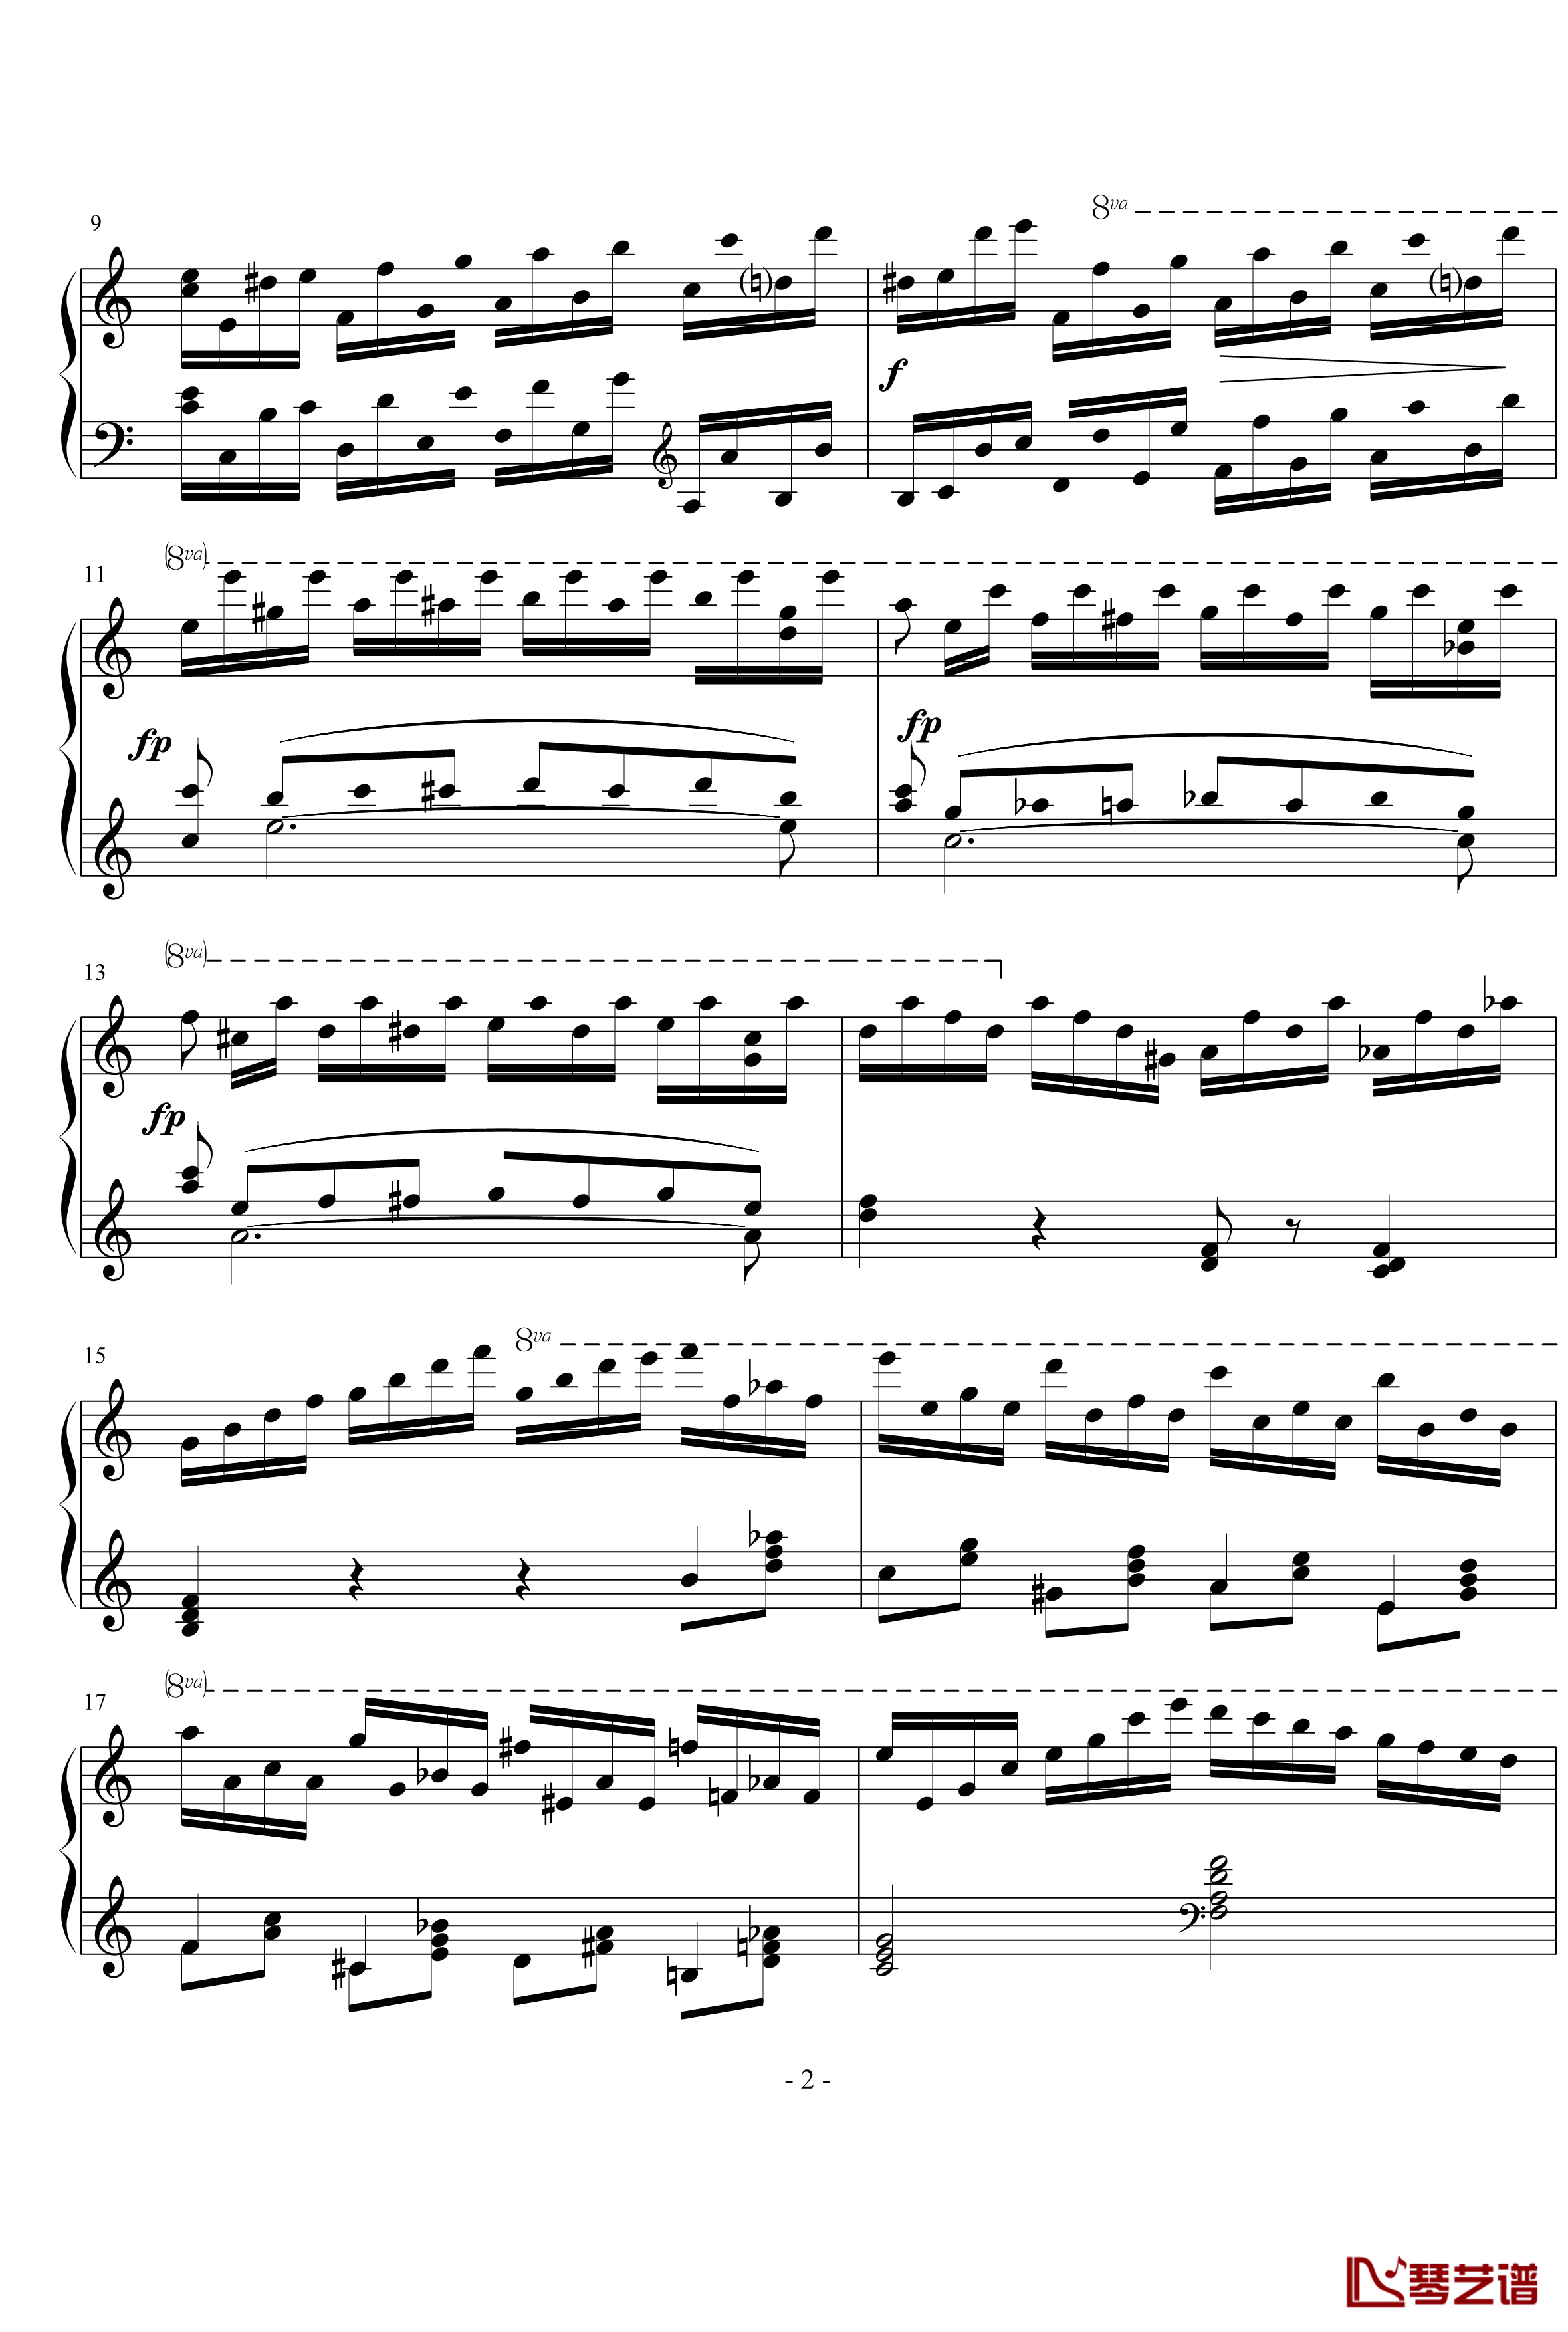 十二首练习形式的钢琴练习曲1钢琴谱-李斯特2